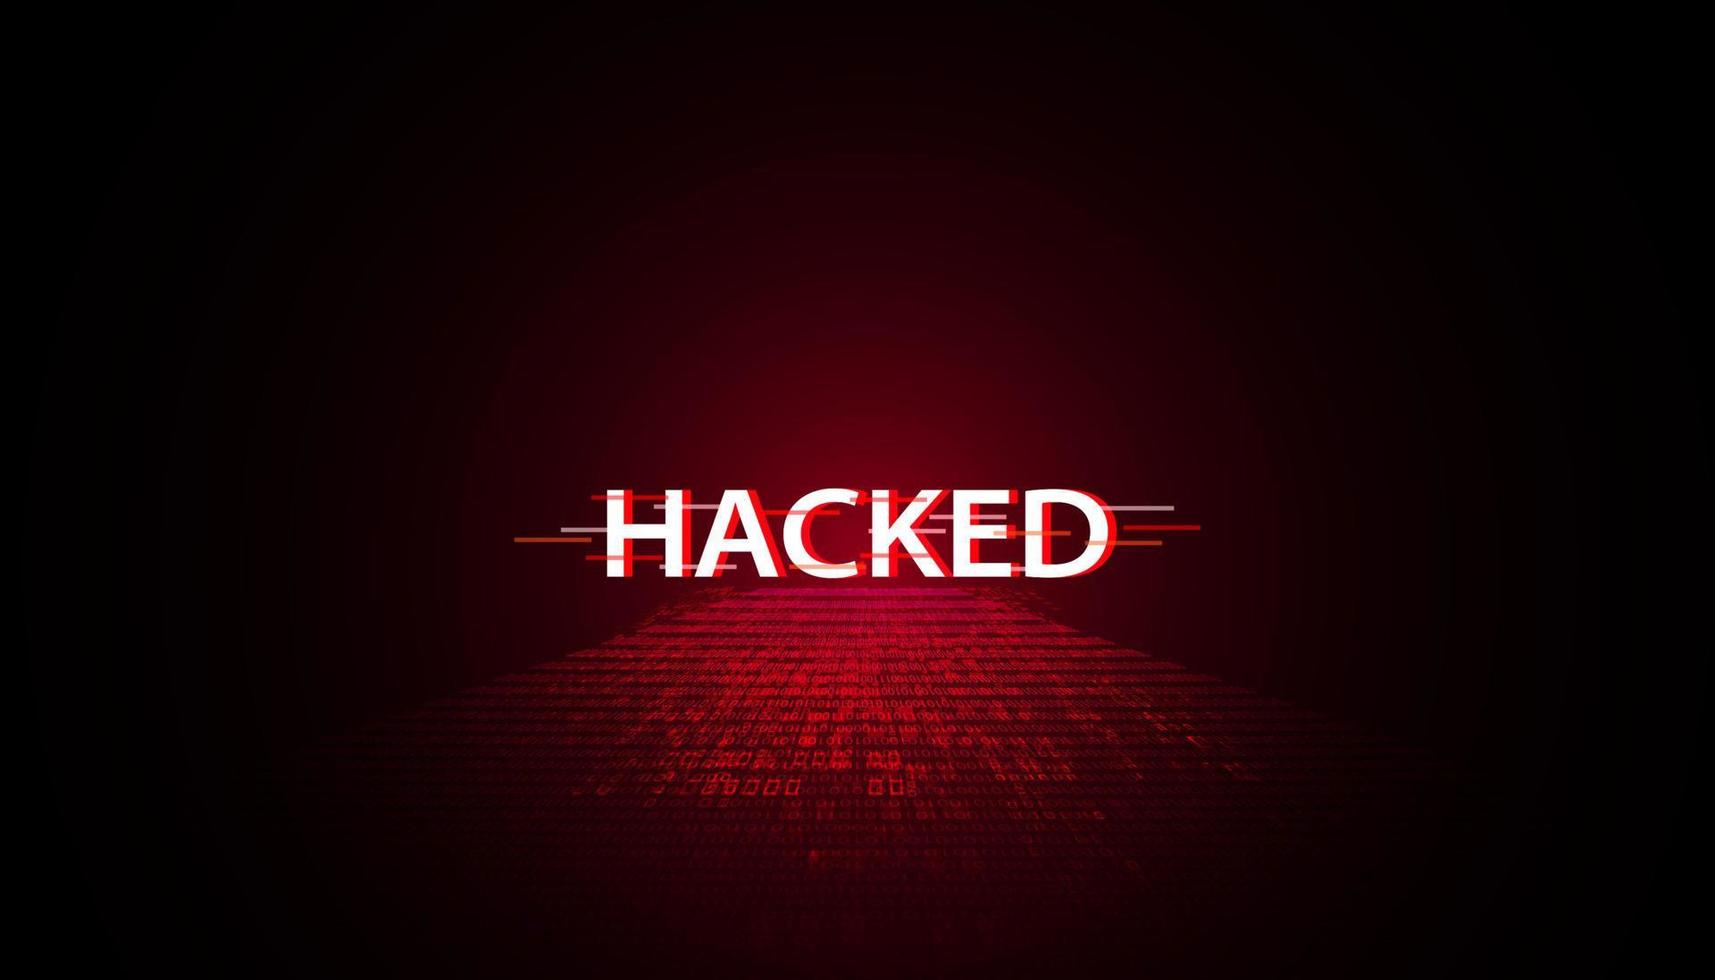 abstrakt ord signal eller är varnade den där den har varit hackat förbi virus, skadliga program eller hackare på en röd digital bakgrund. vektor